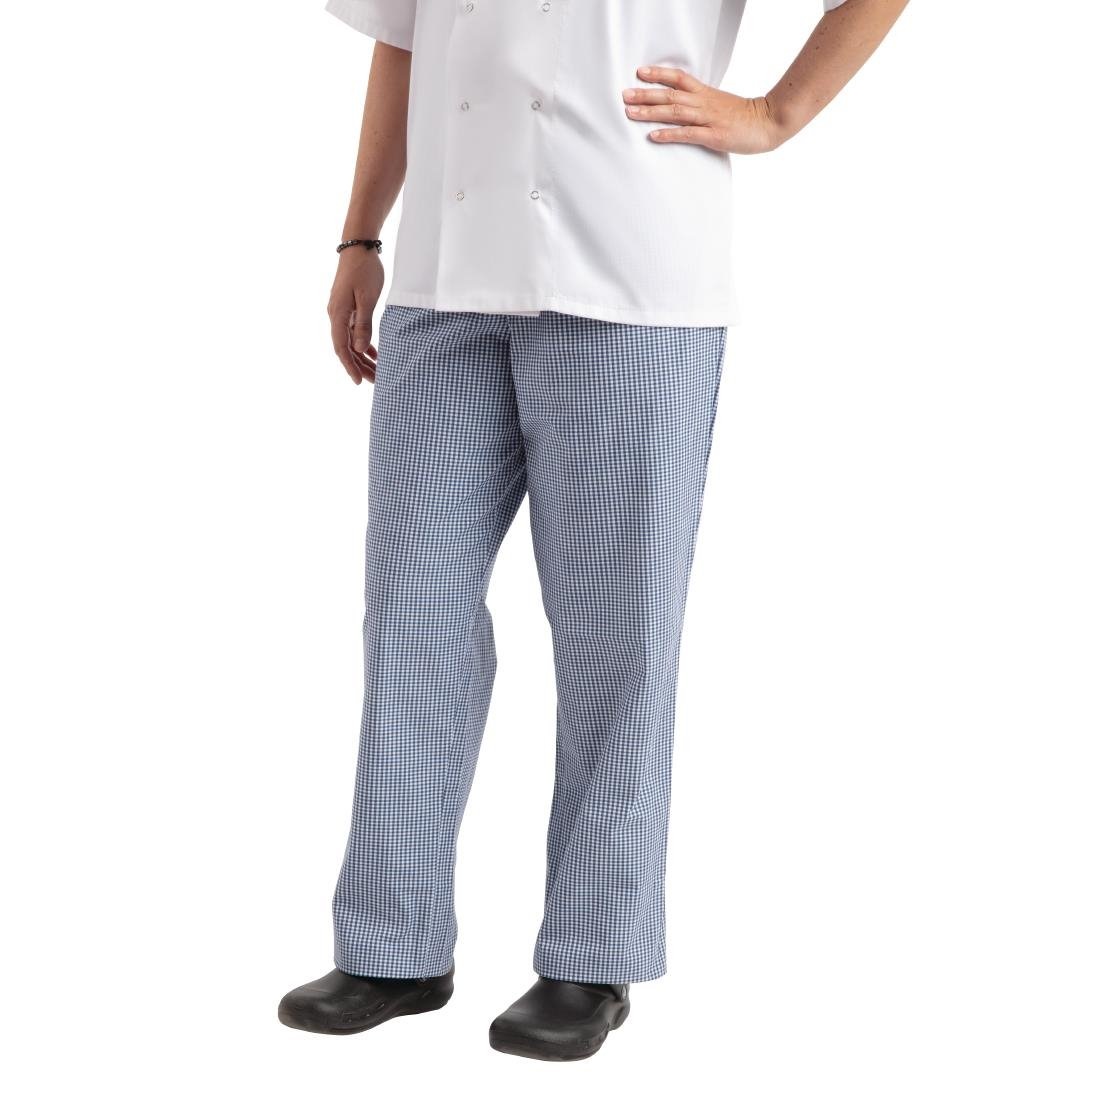 Pantalon de Cuisine | Whites Easyfit | A Carreaux Blanc/Bleu | Unisexe | Disponible en 6 Tailles